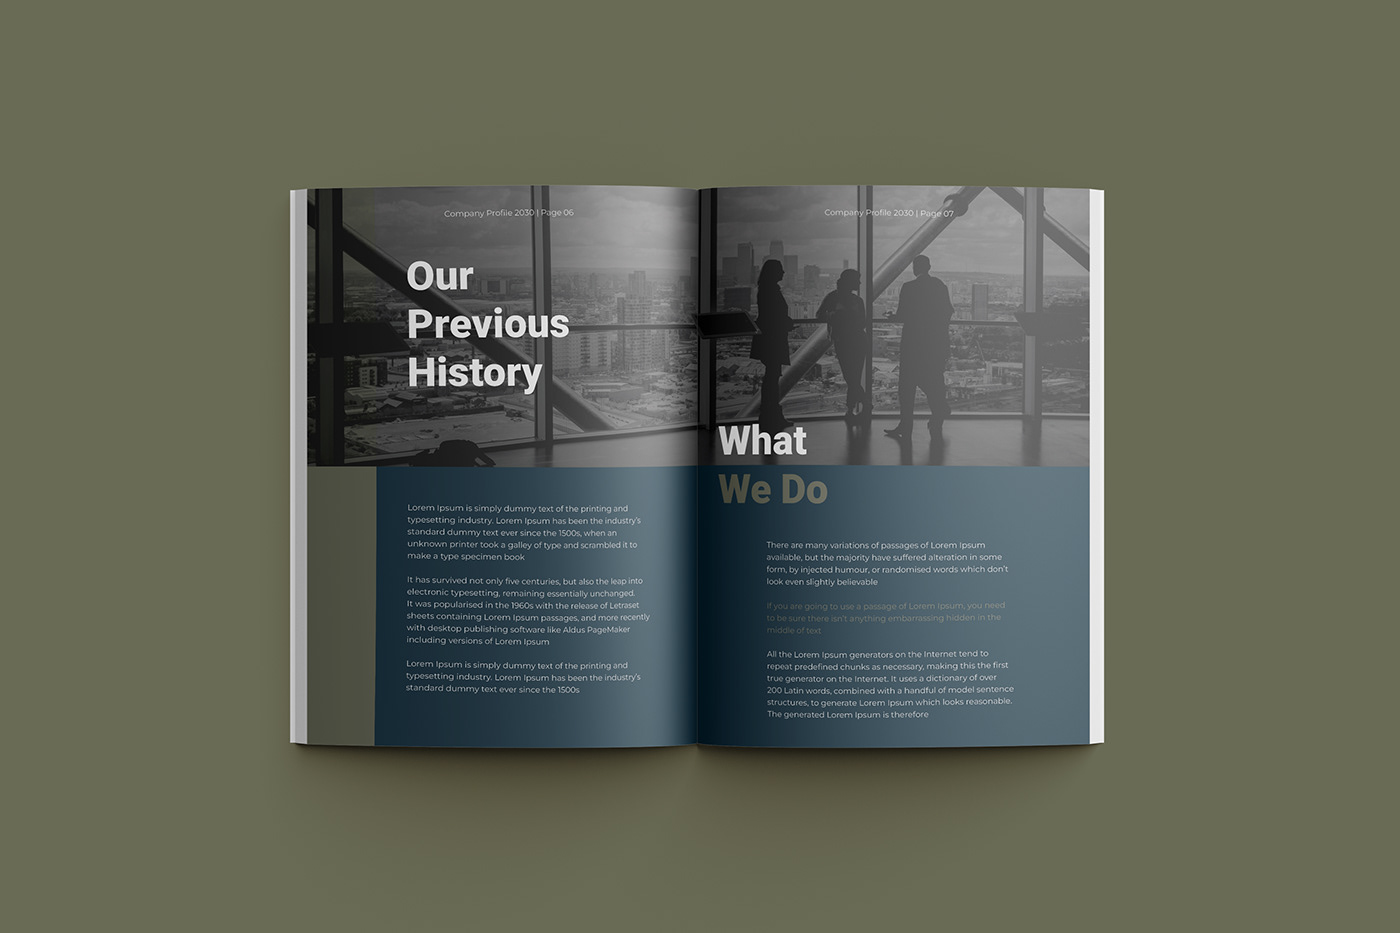 design graphic design  print Layout brochure magazine Graphic Designer company profile corporate template